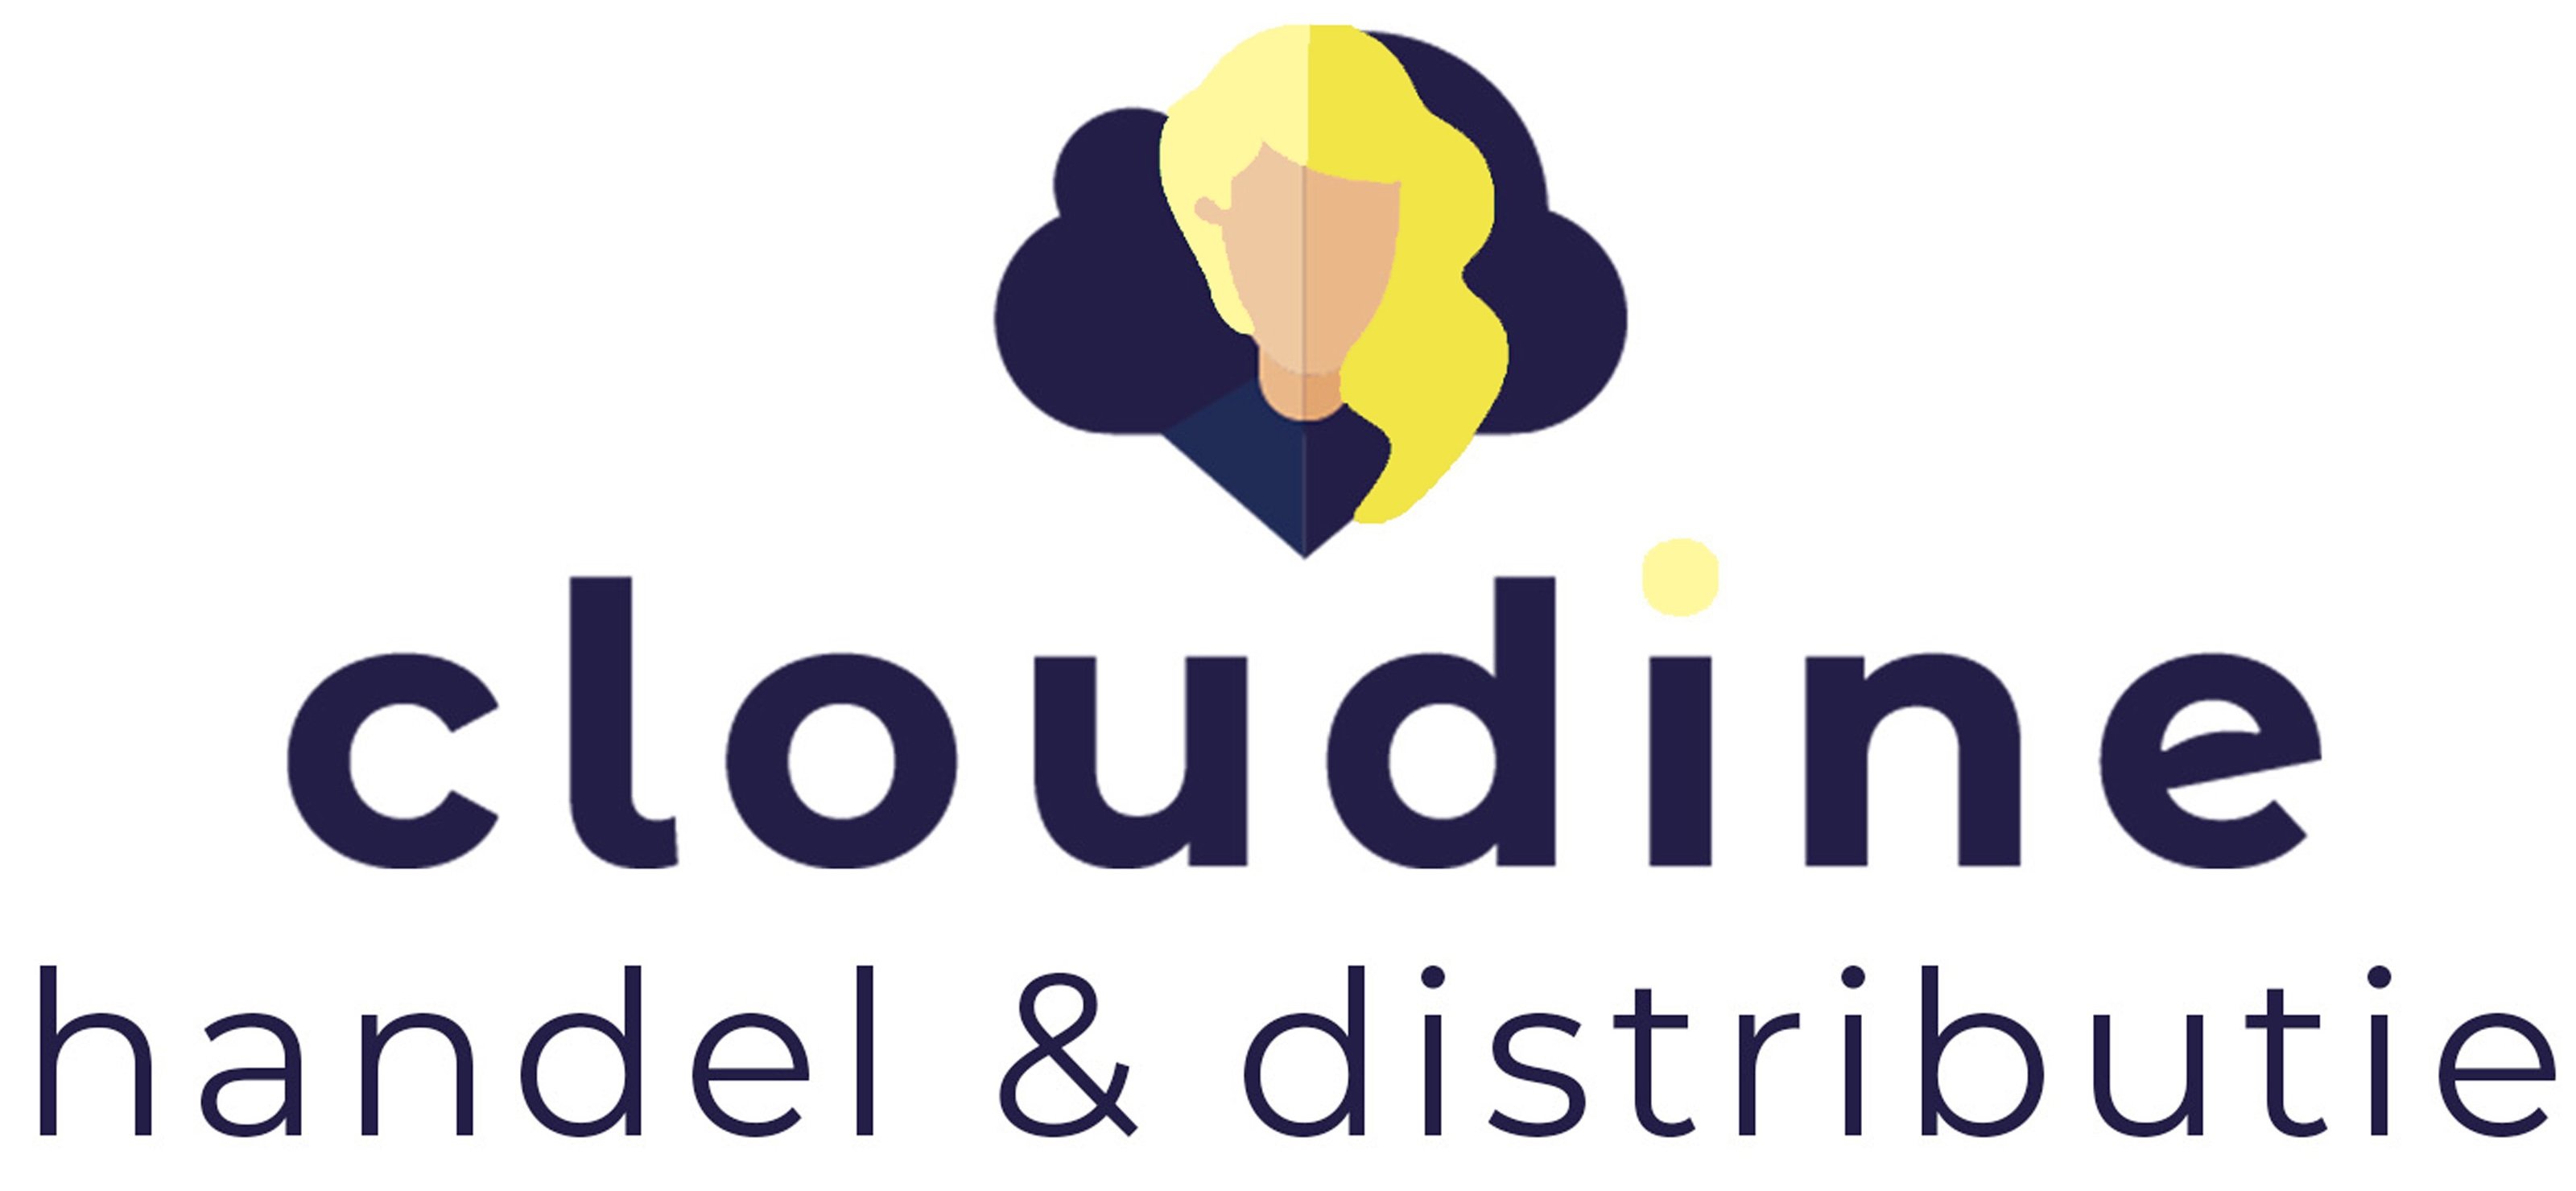 Cloudine - handel & distributie | Fourtop ICT